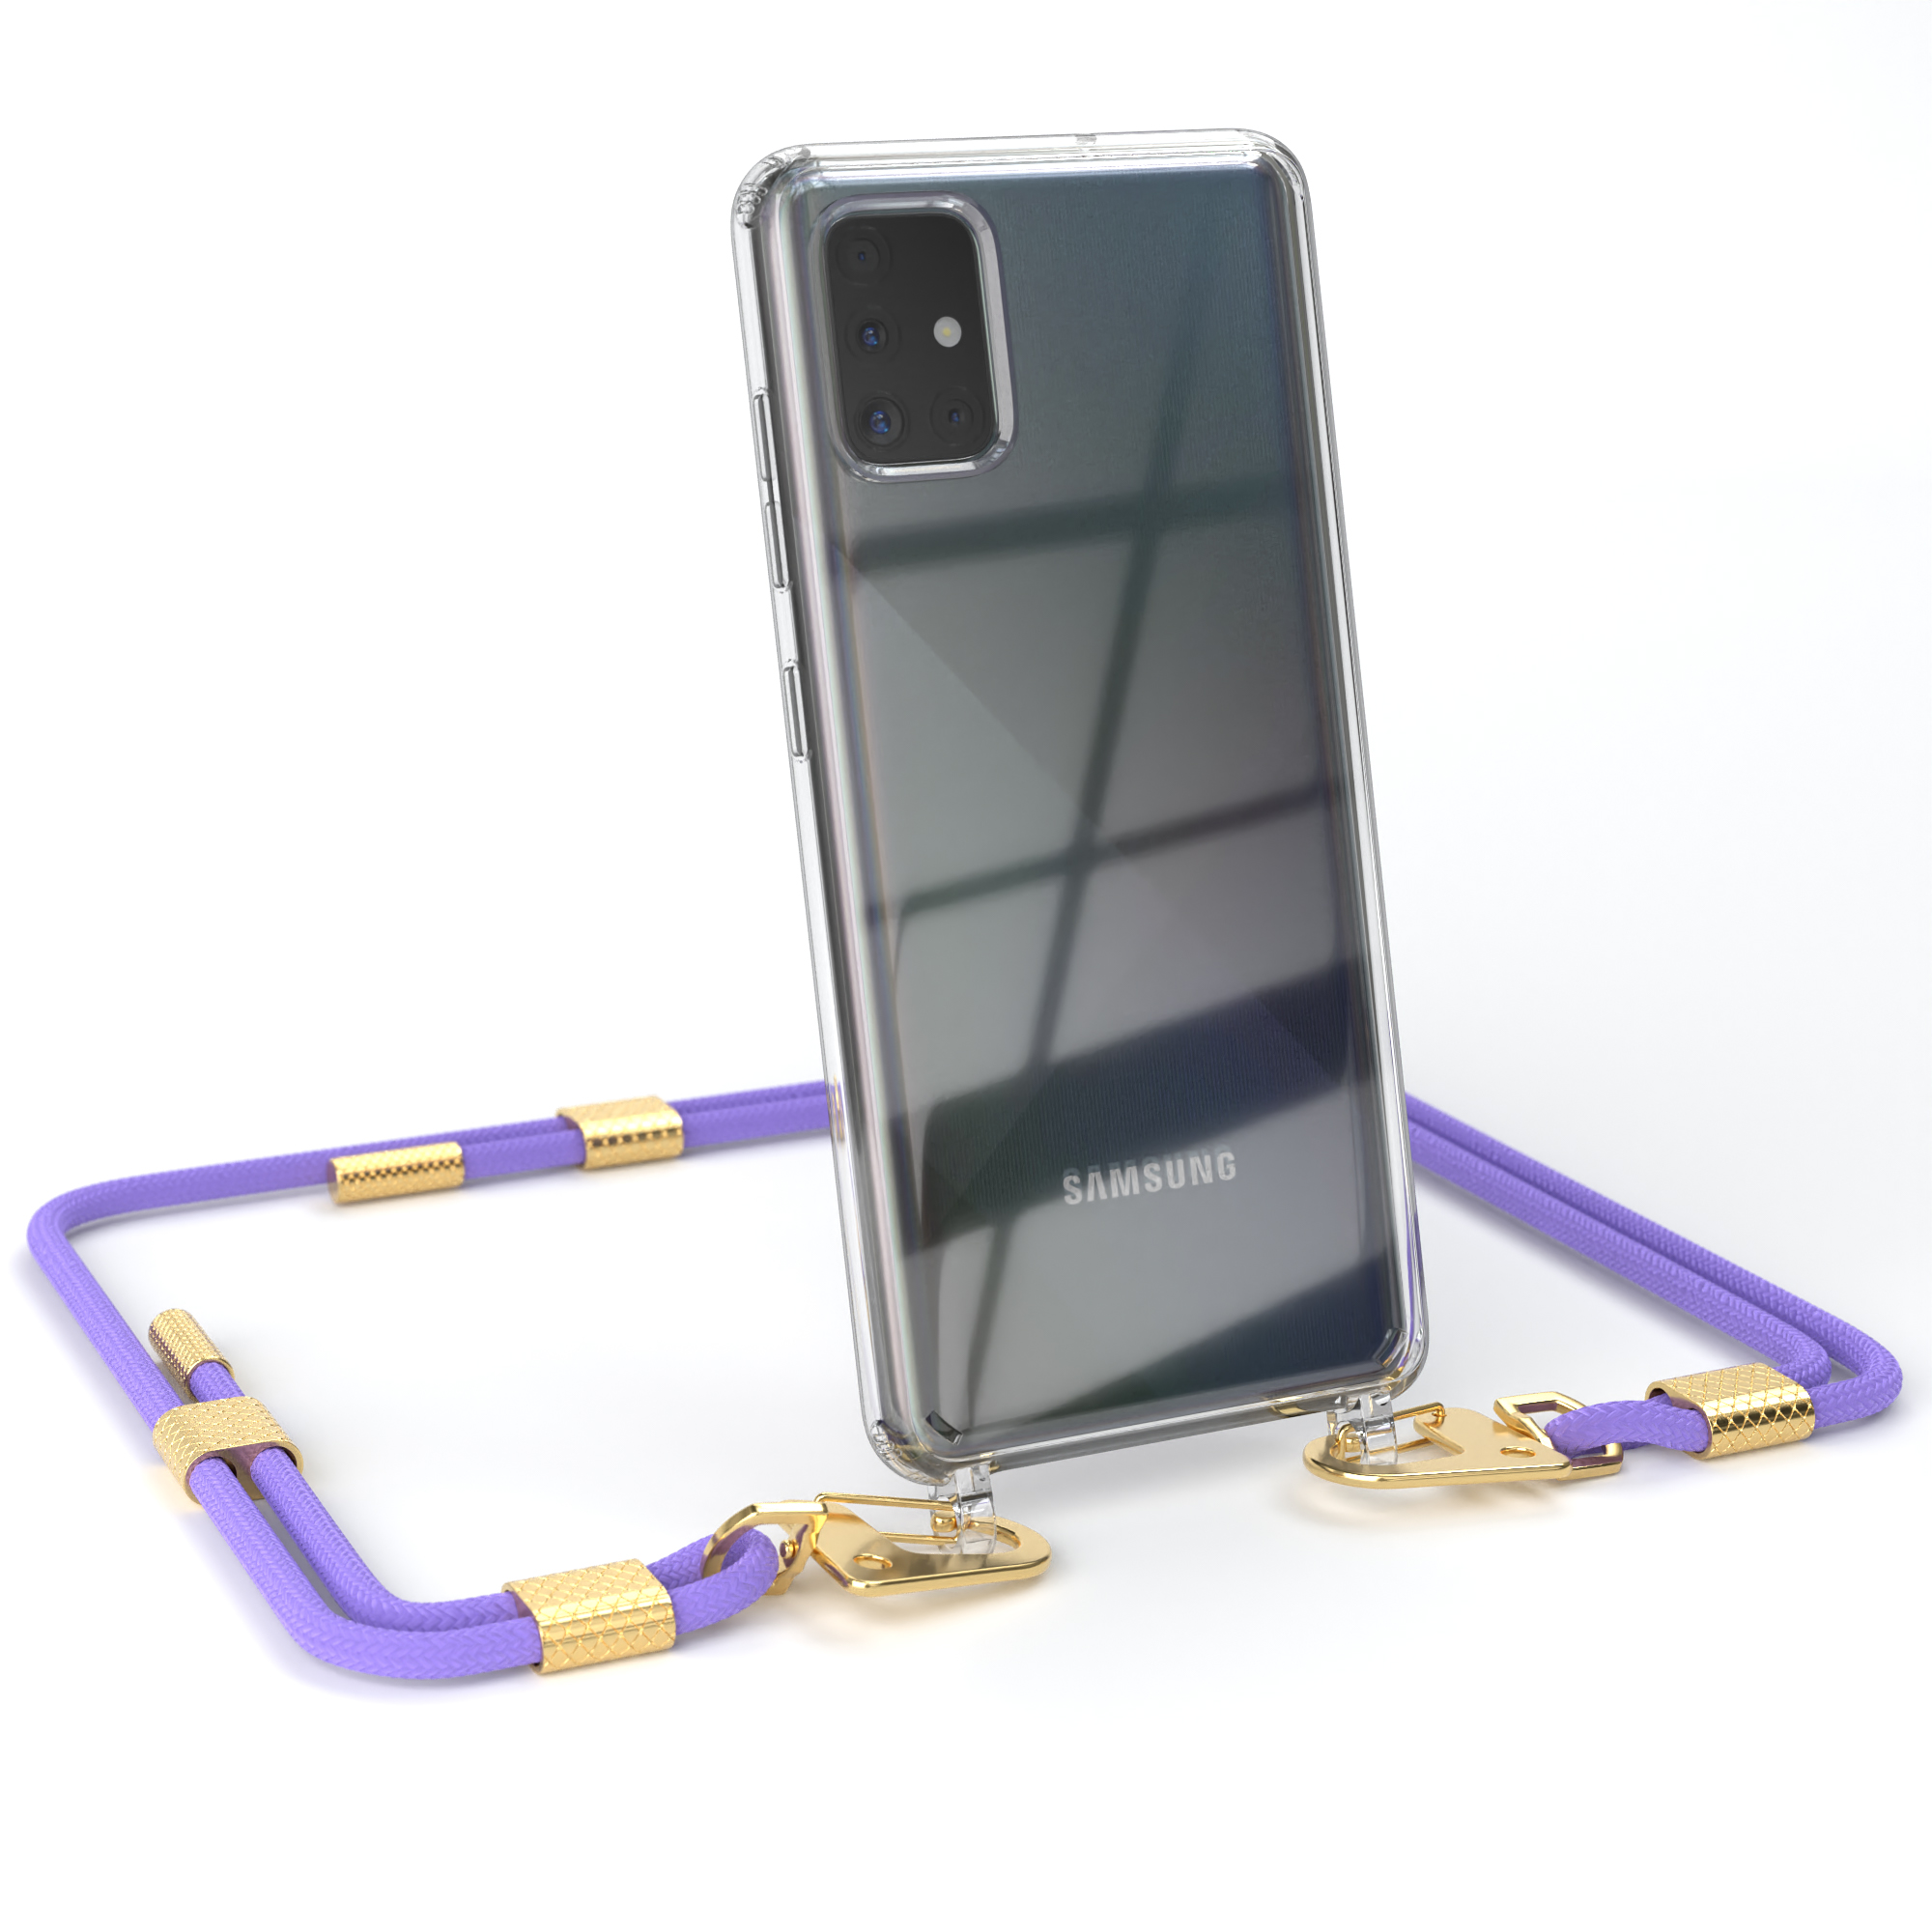 EAZY CASE Transparente Handyhülle mit runder Umhängetasche, Galaxy Flieder + Karabiner, / Gold Lila Samsung, A51, Kordel